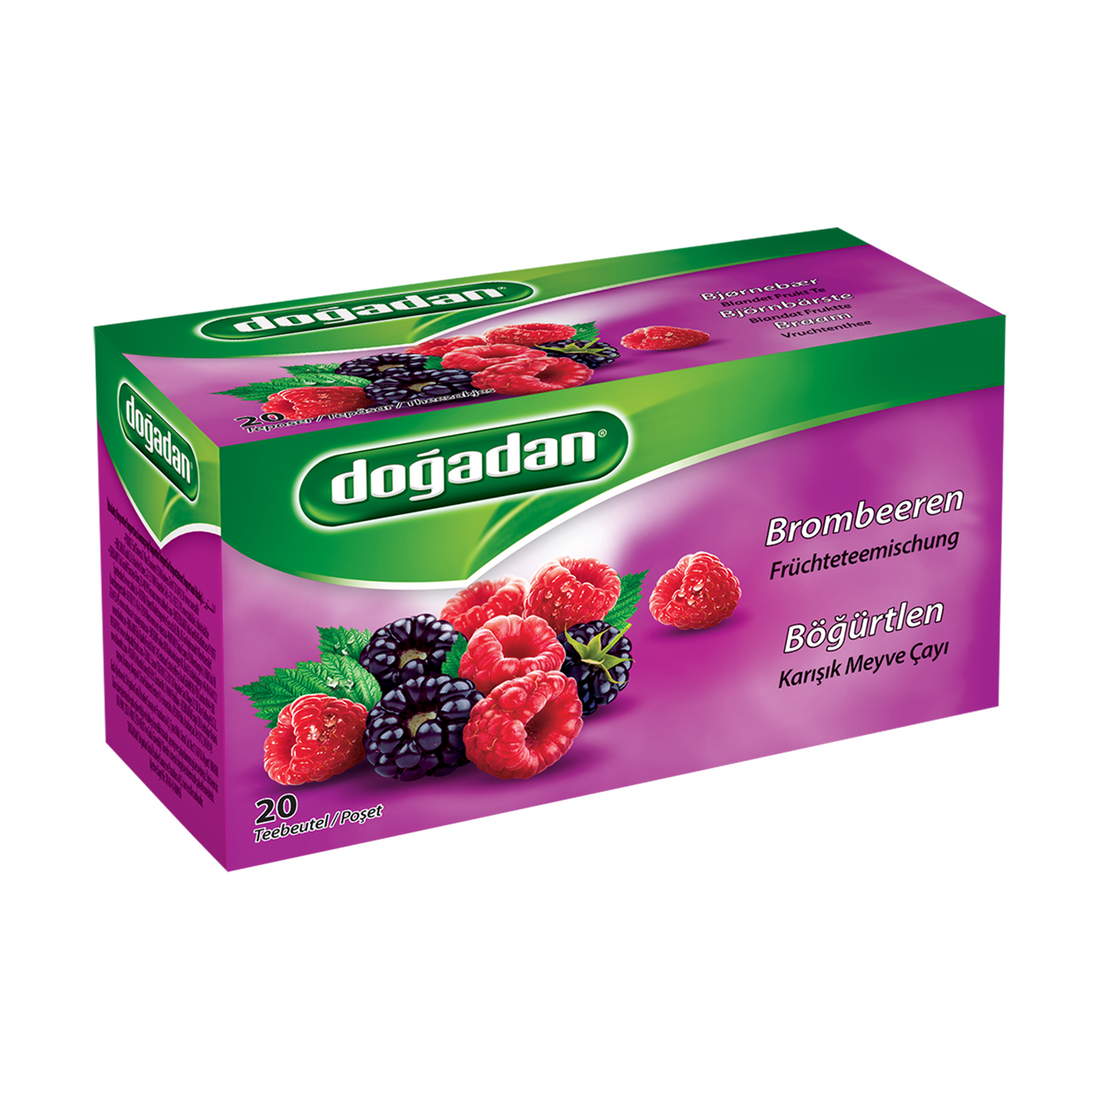 Dogadan Blackberry Mixed Fruit Tea 2g×20P | Dogadan Bogurtlen Karisik Meyve Cayi | Blackberry Fruit Infusion